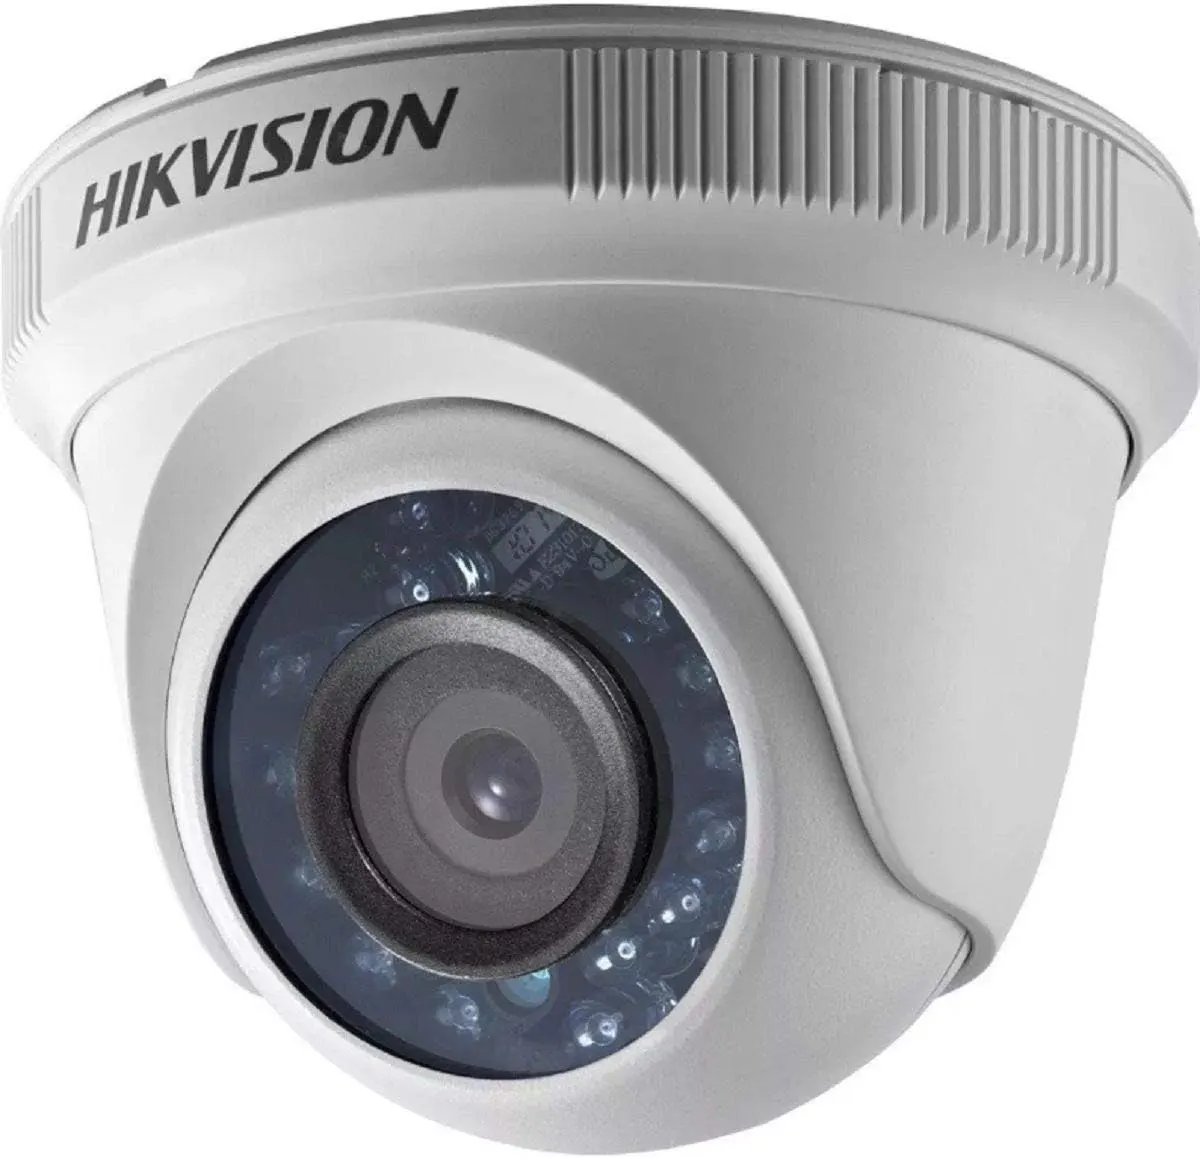 كاميرا مراقبة هيك فيجن، بدقة 2 ميجابكسل، عدسة 2.8 ملم، DS.2CE56D0T